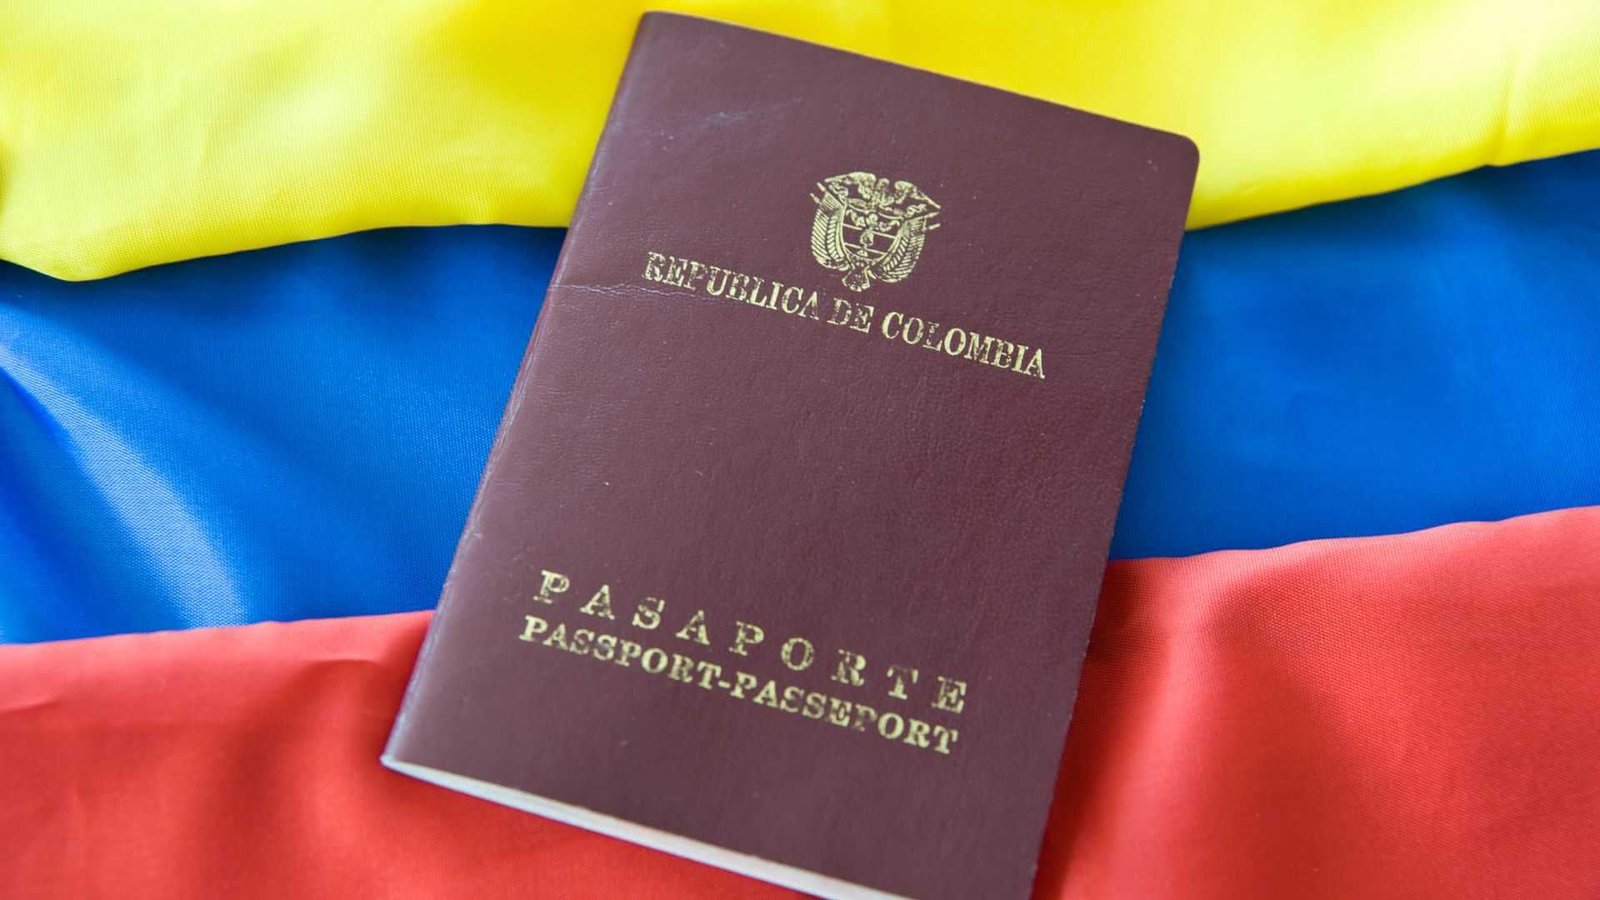 Arraigo social - imagen bandera Colombia y pasaporte colombiano